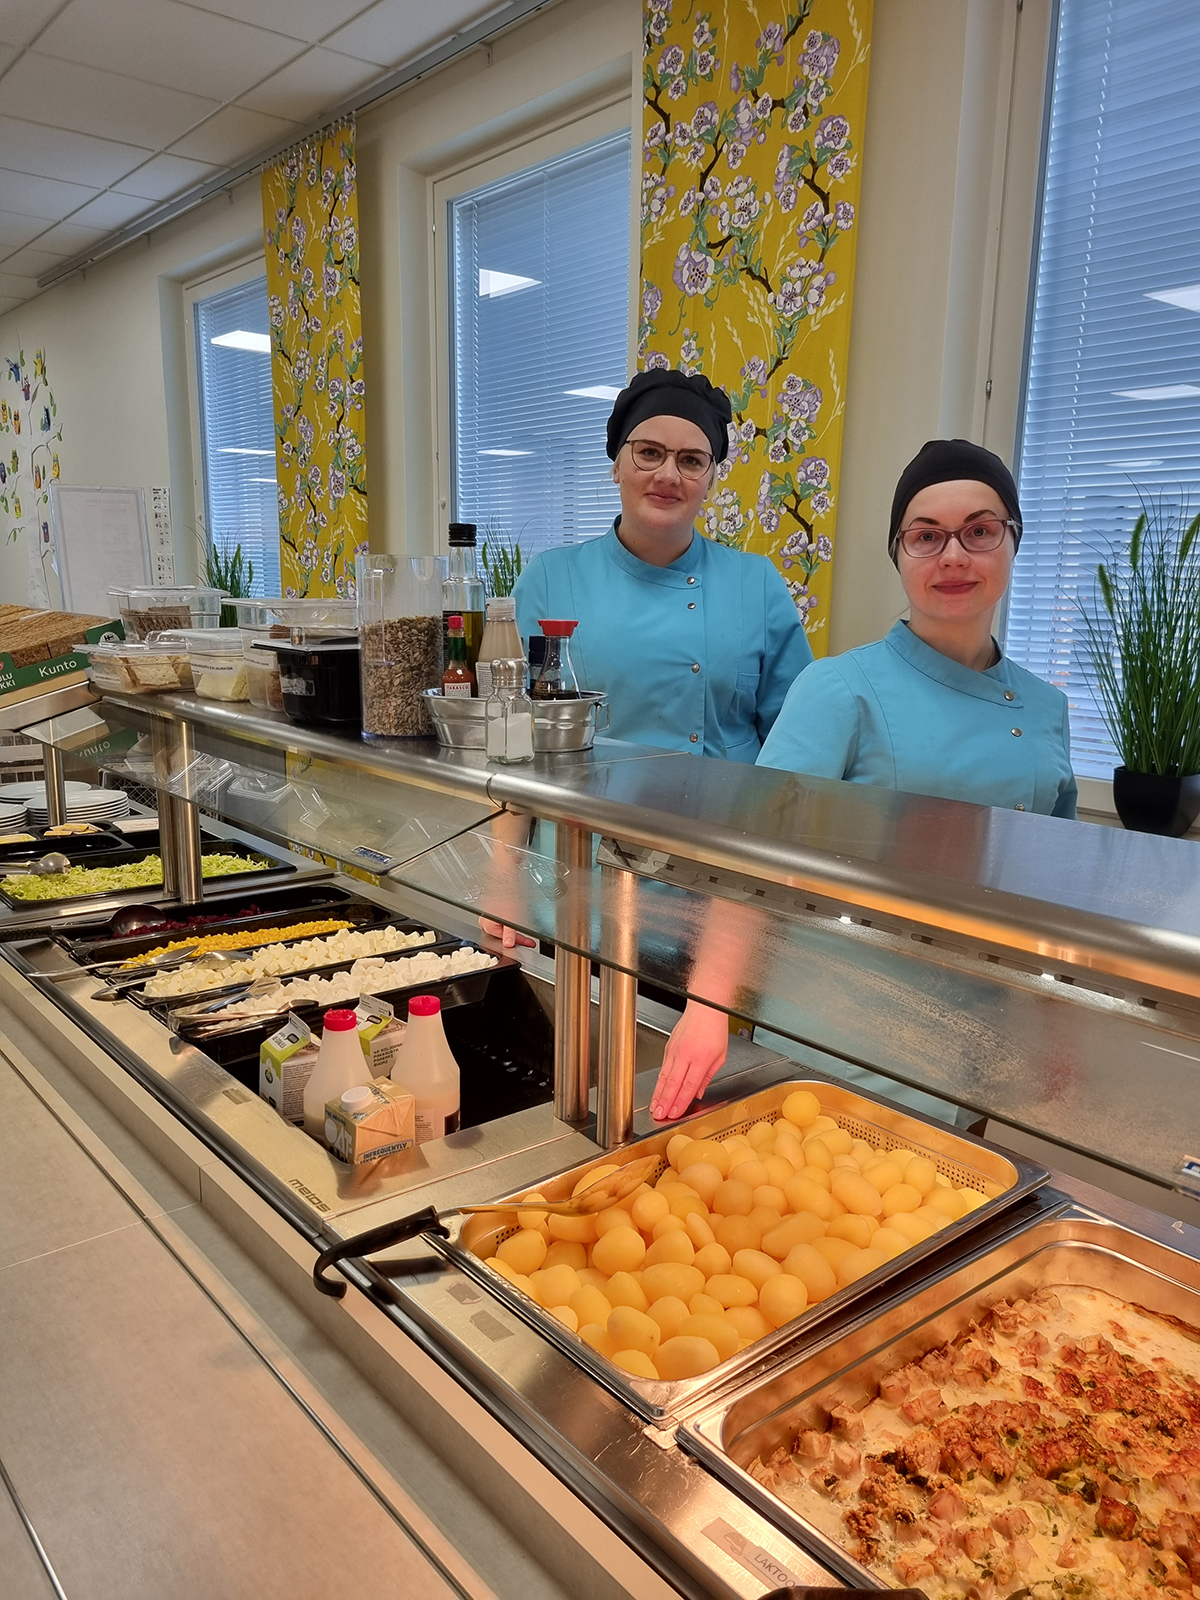 Koulunmäen koulun vastaava Marika Kuivakangas ja ruokapalvelutyöntekijä Tanja Komulainen.